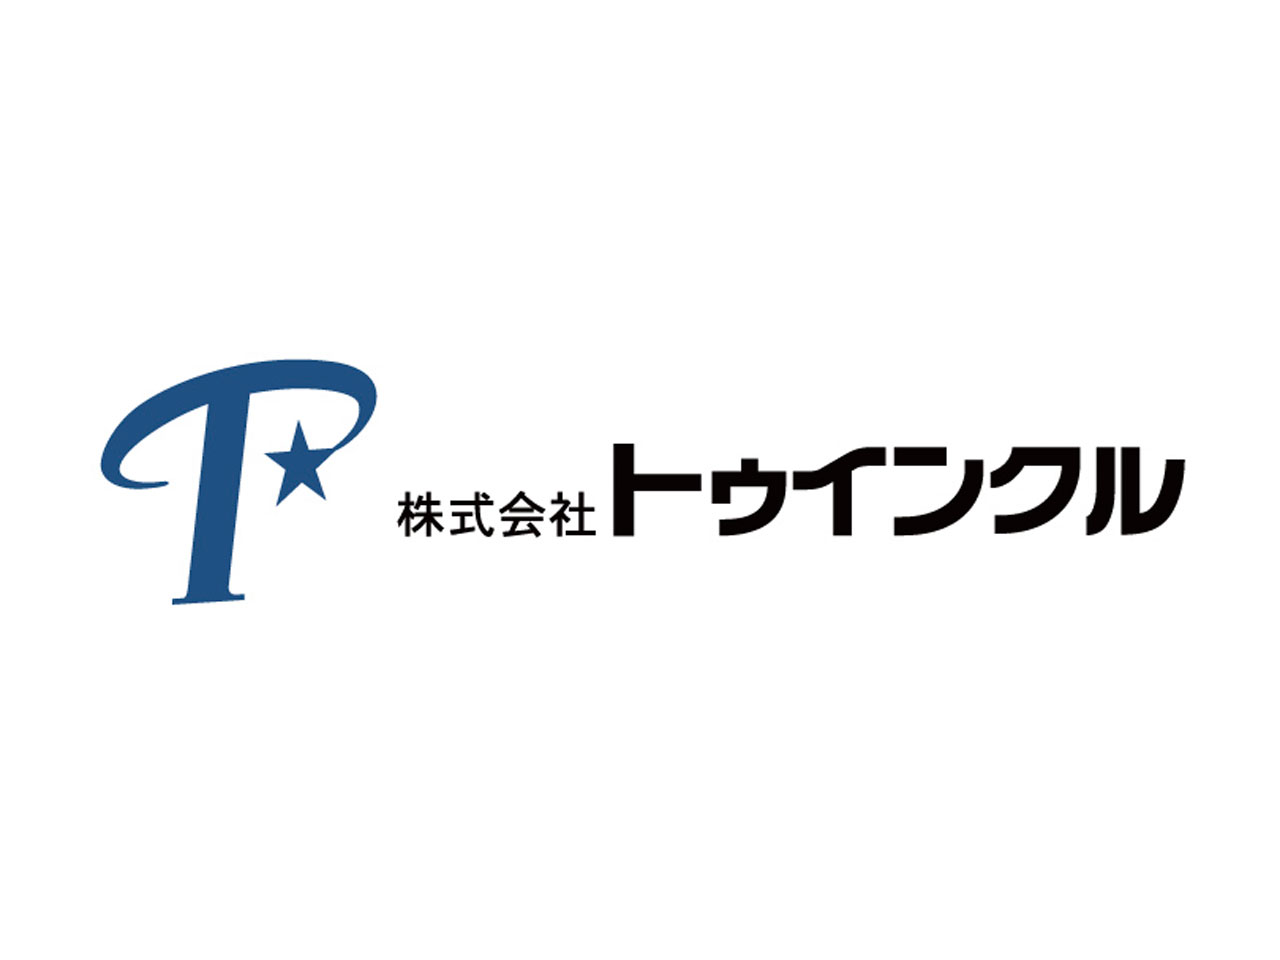 同社は、東京都多摩市にあるITサービスの会社だ。